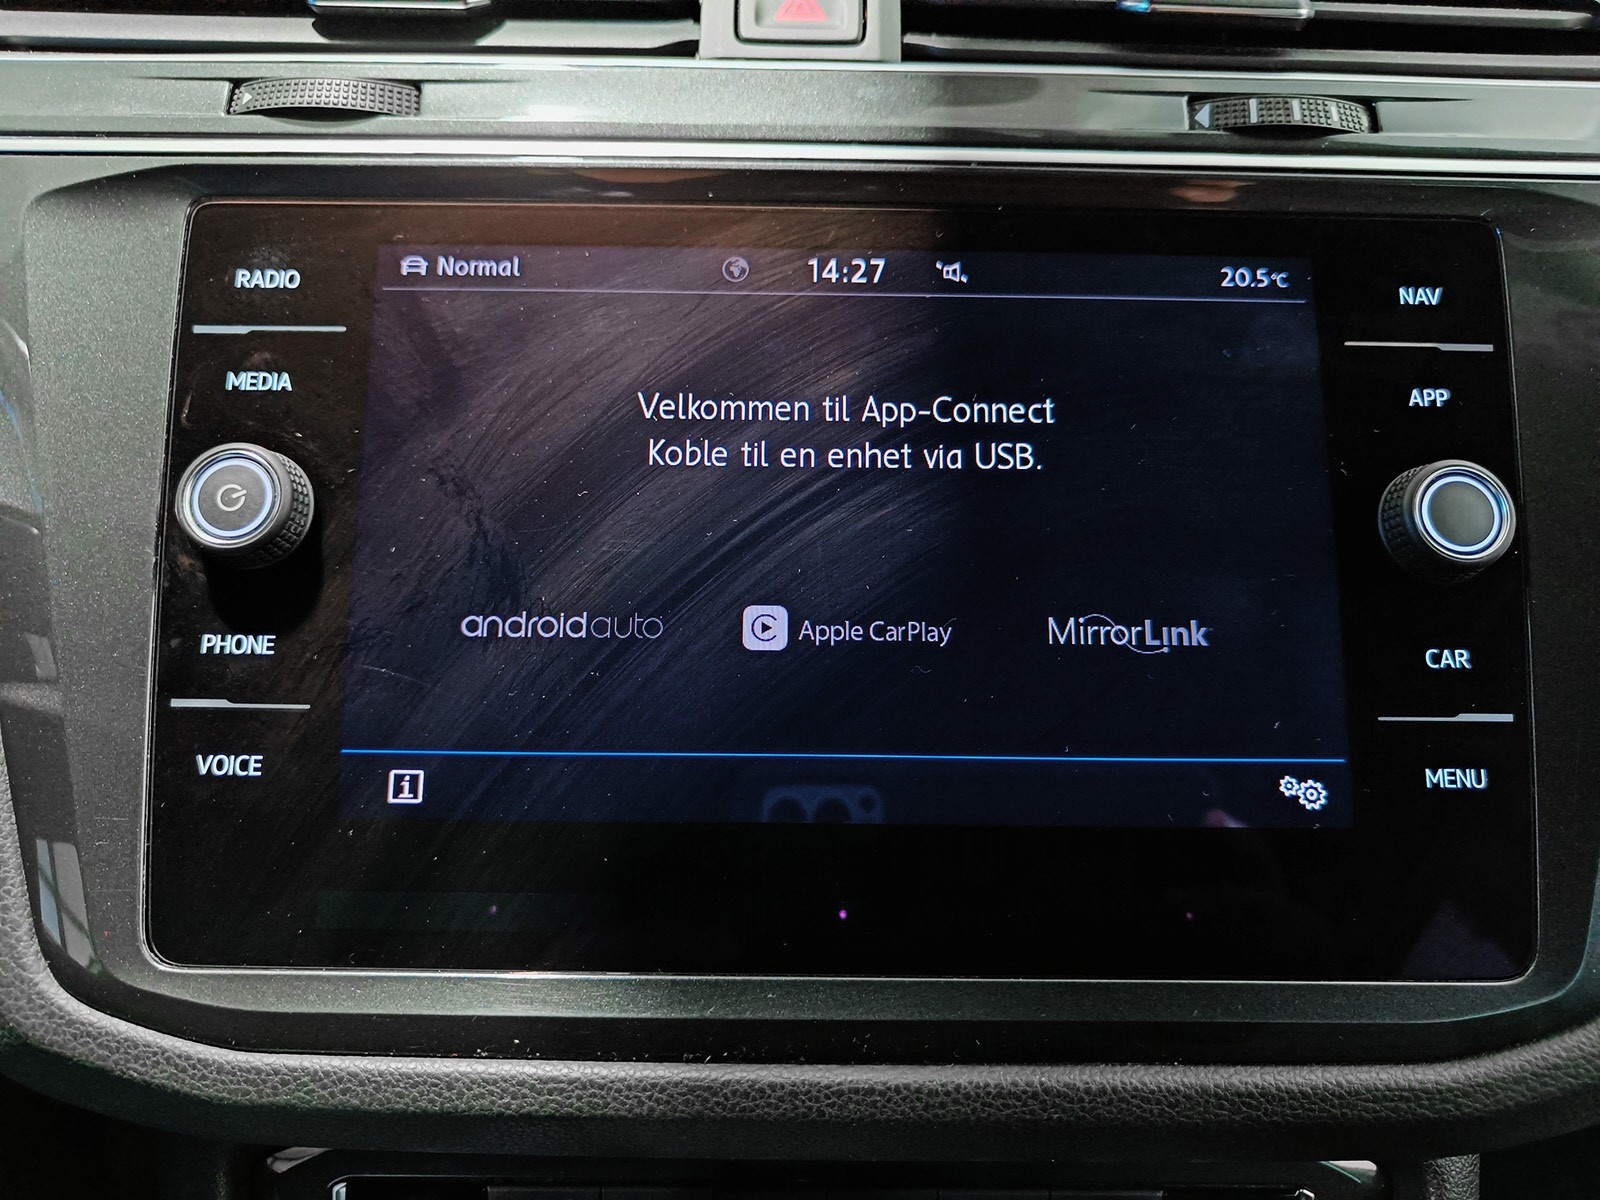 App-connect. Koble til mobilen over androidauto eller Apple CarPlay for å streame apper fra enheten.